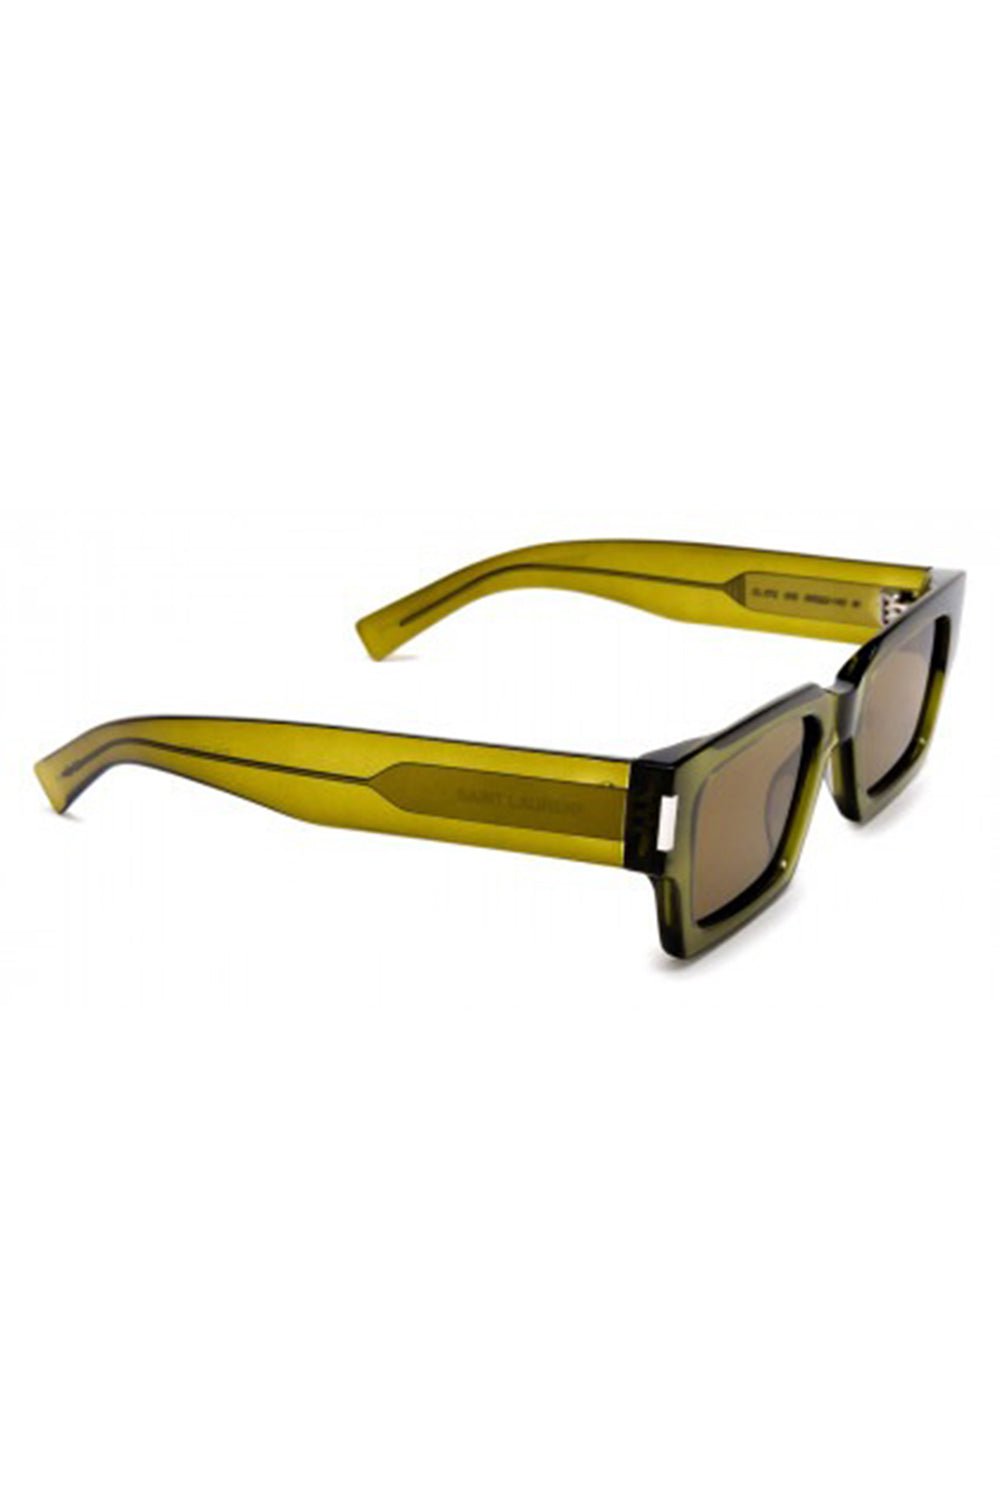 Saint Laurent SL 572 005 Sunglasses Green